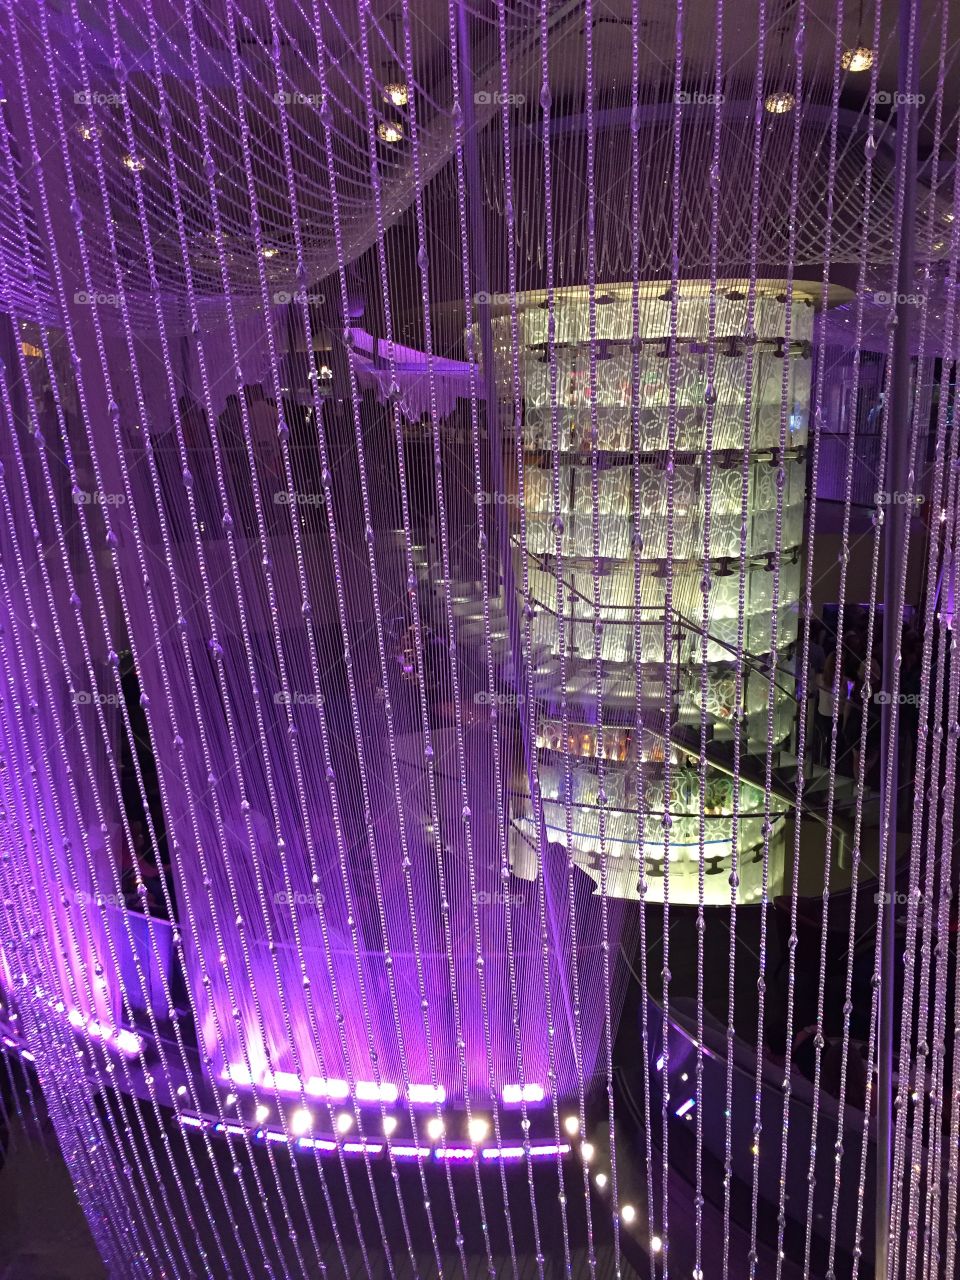 The crystal elevator in the chandelier nightclub in the Cosmopolitan resort, Las Vegas